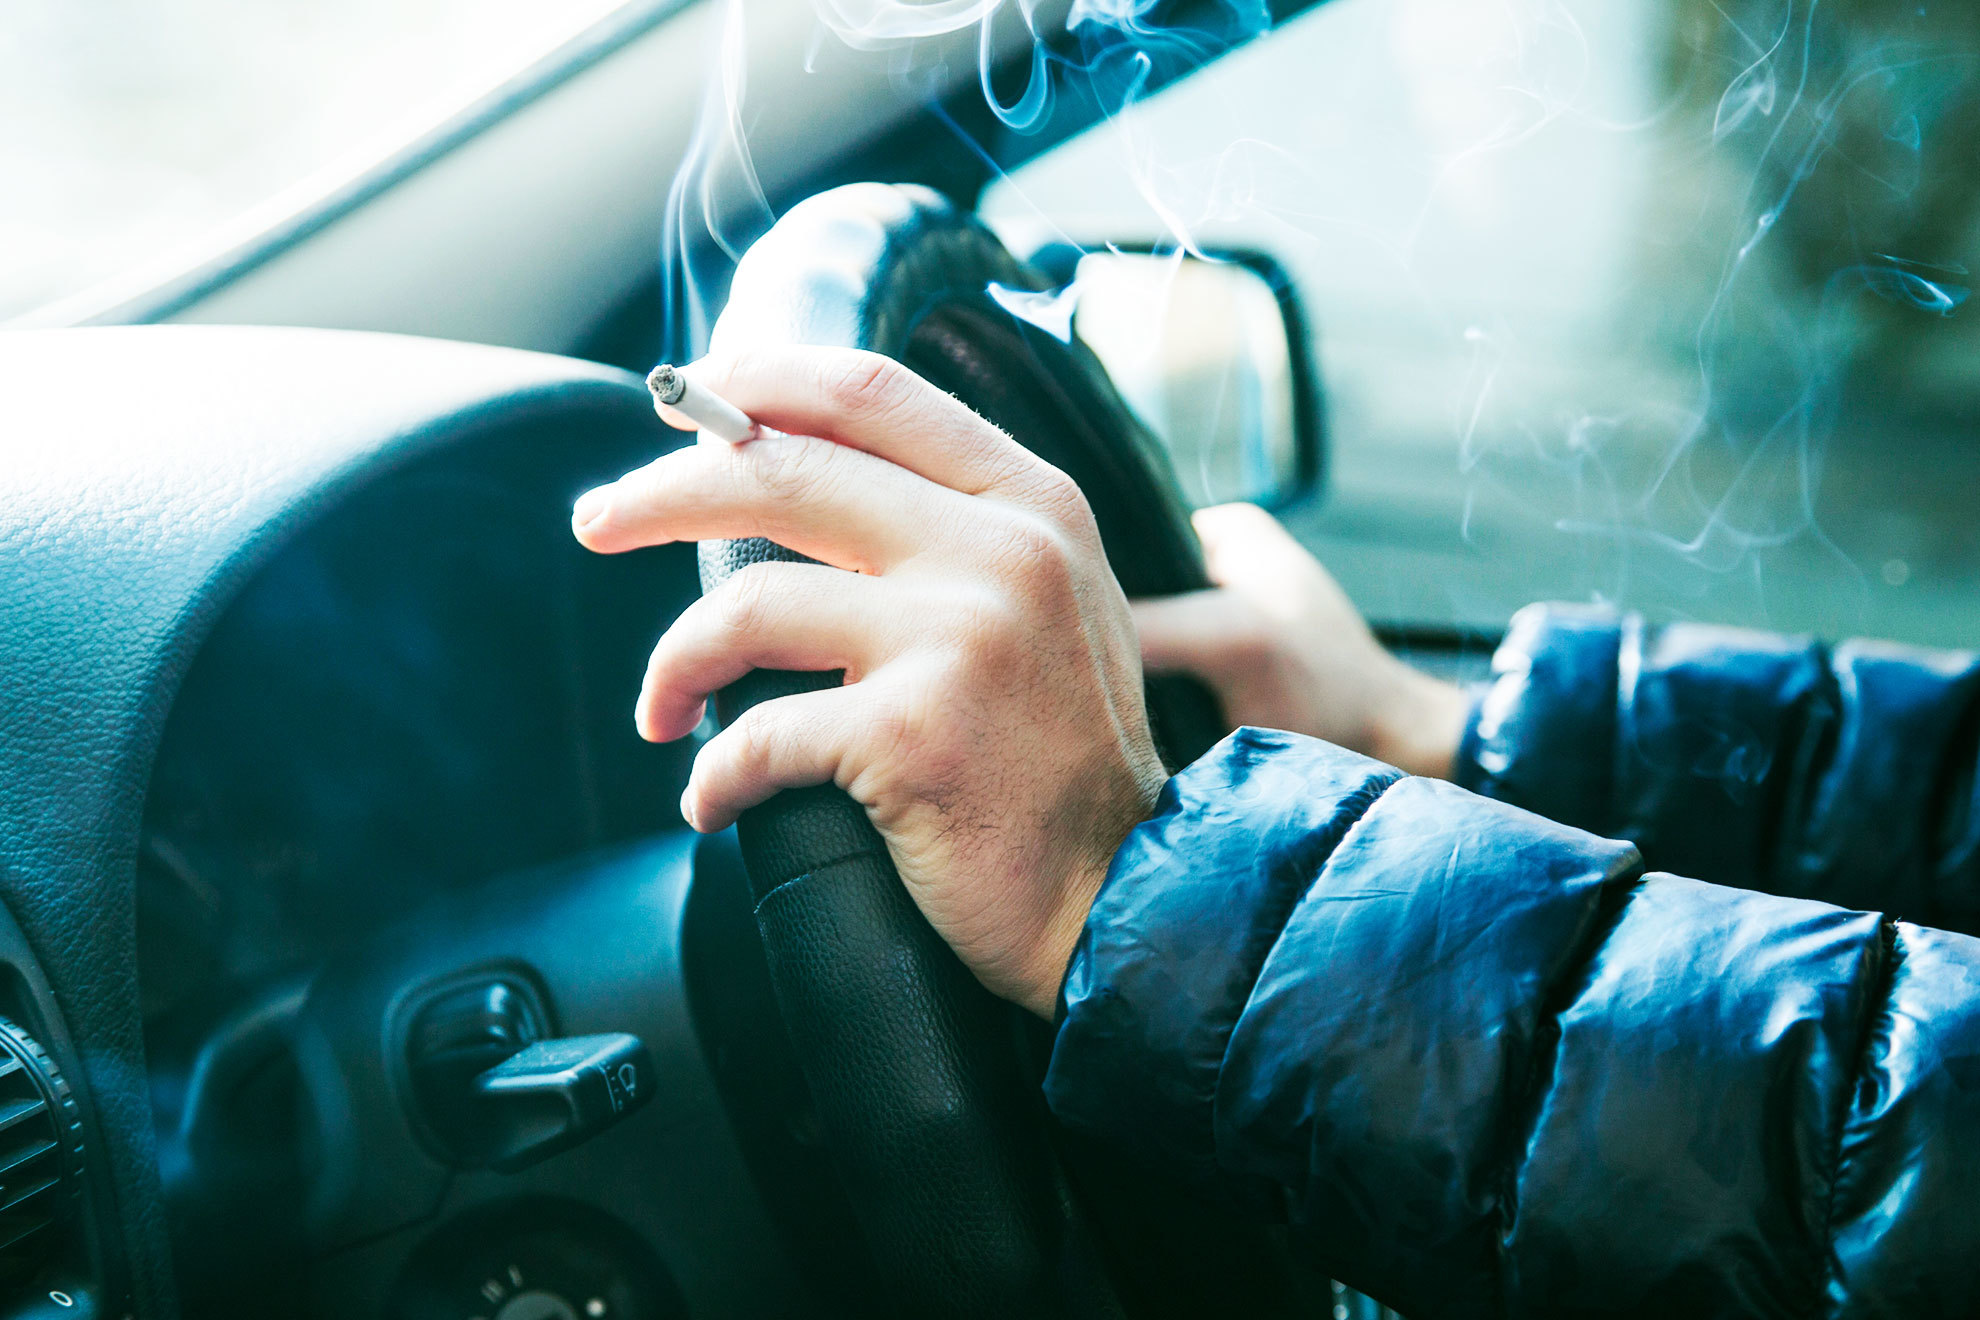 Vómitos, tabaco... Así de sencillo es eliminar por completo cualquier mal olor en tu coche